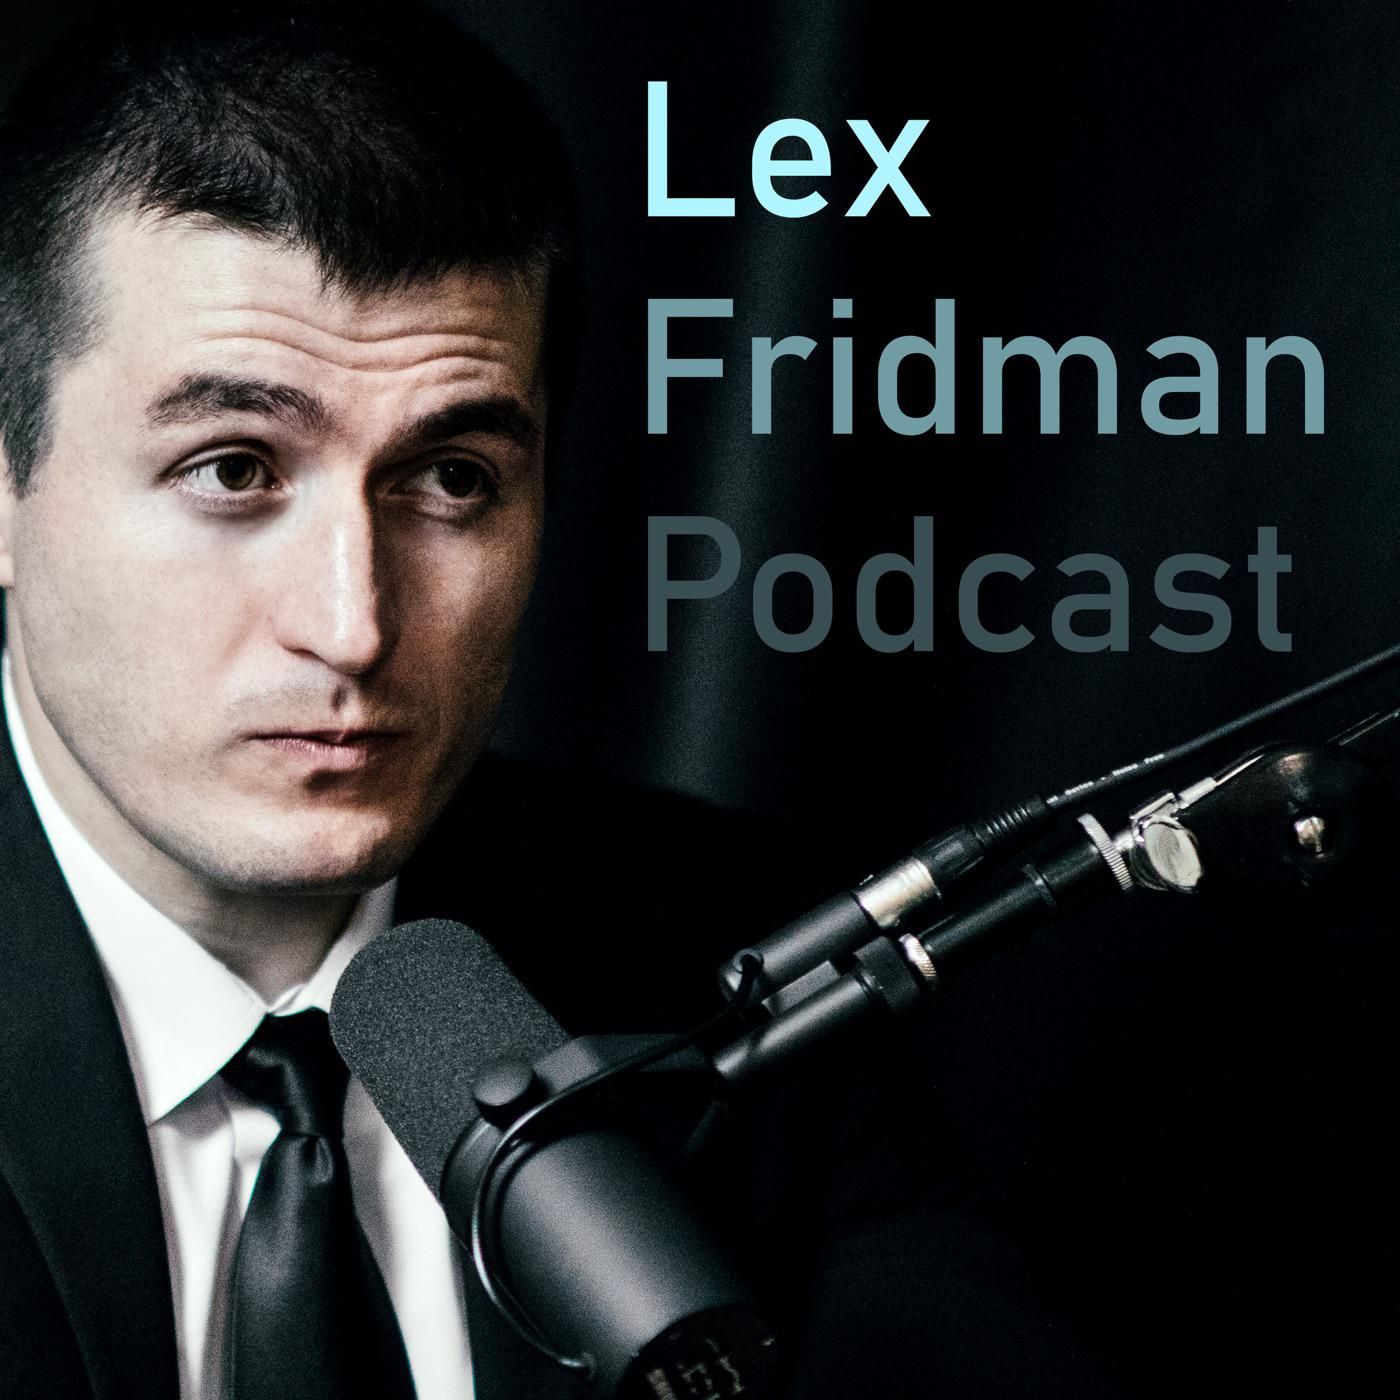 lex fridman podcast